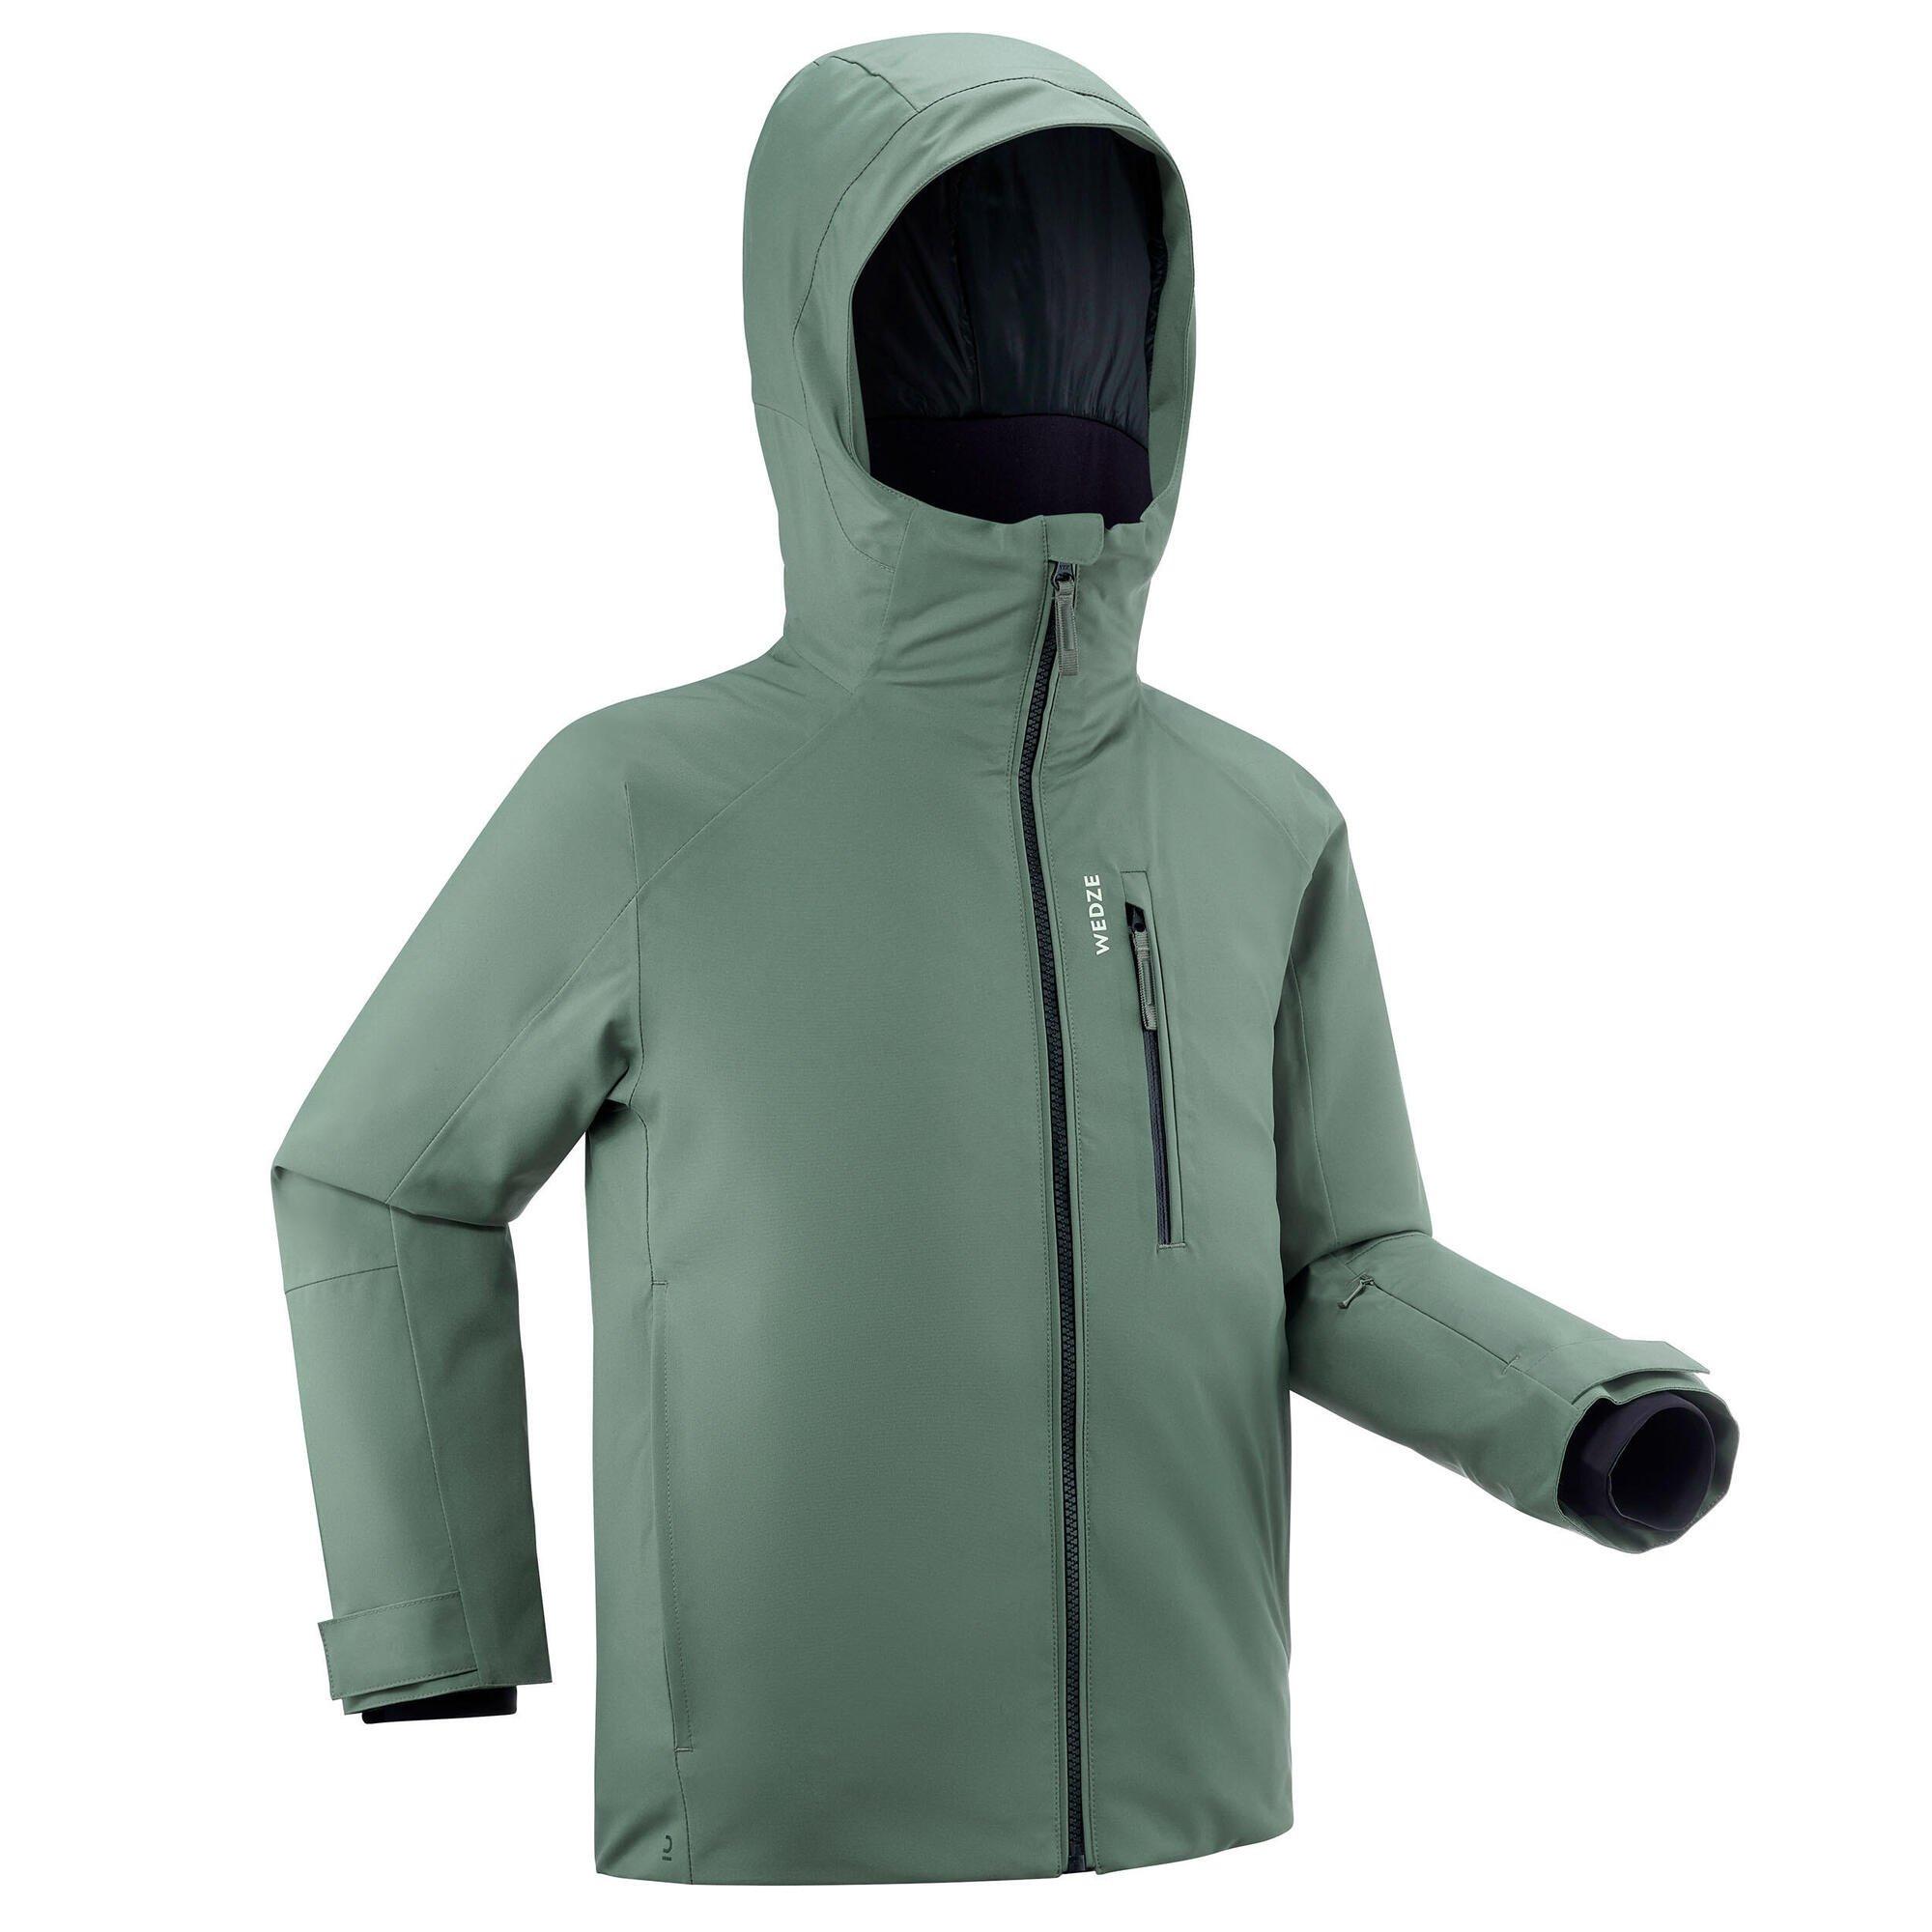 Теплая и водонепроницаемая лыжная куртка Decathlon 550 Wedze, зеленый